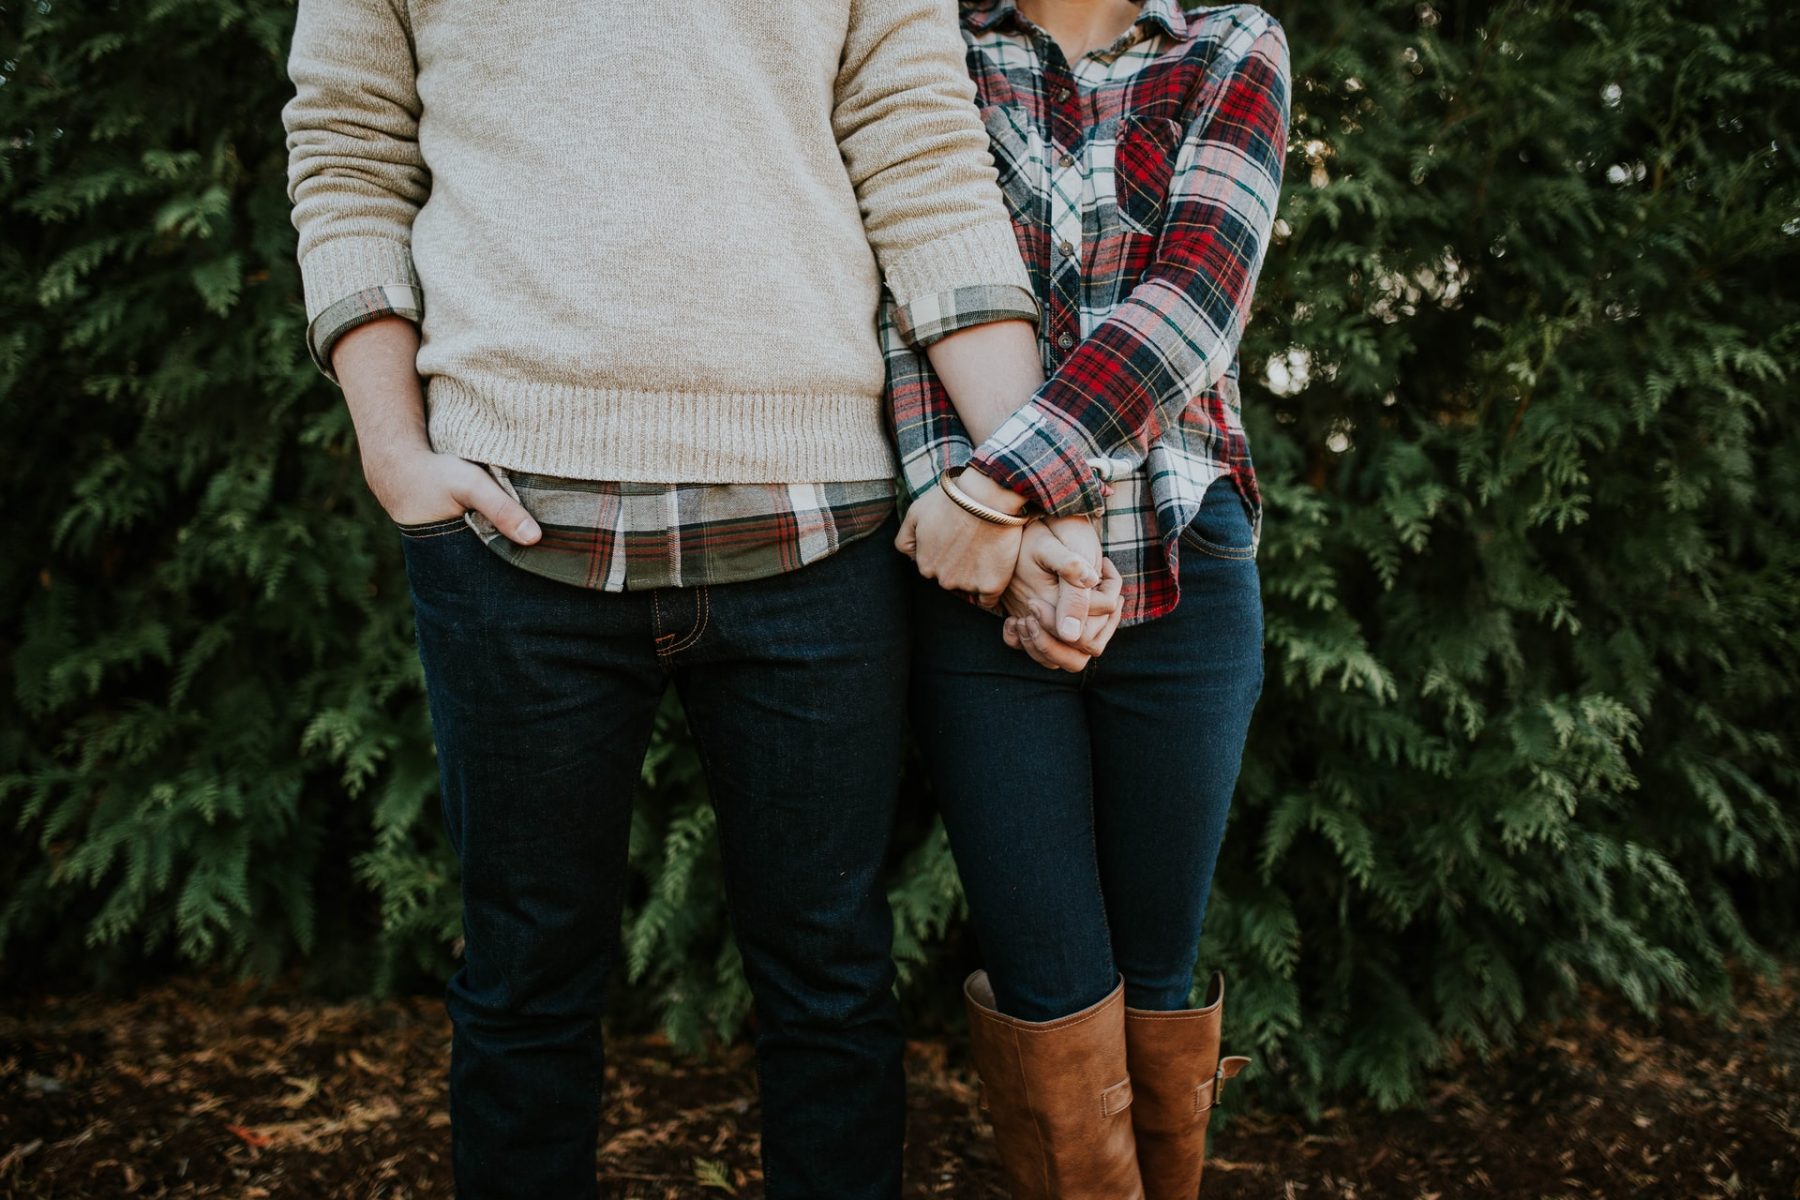 Γάμος ψυχική υγεία: Πώς λειτουργεί η δυναμική μιας σχέσης όταν ο ένας σύντροφος πάσχει από ψυχική ασθένεια